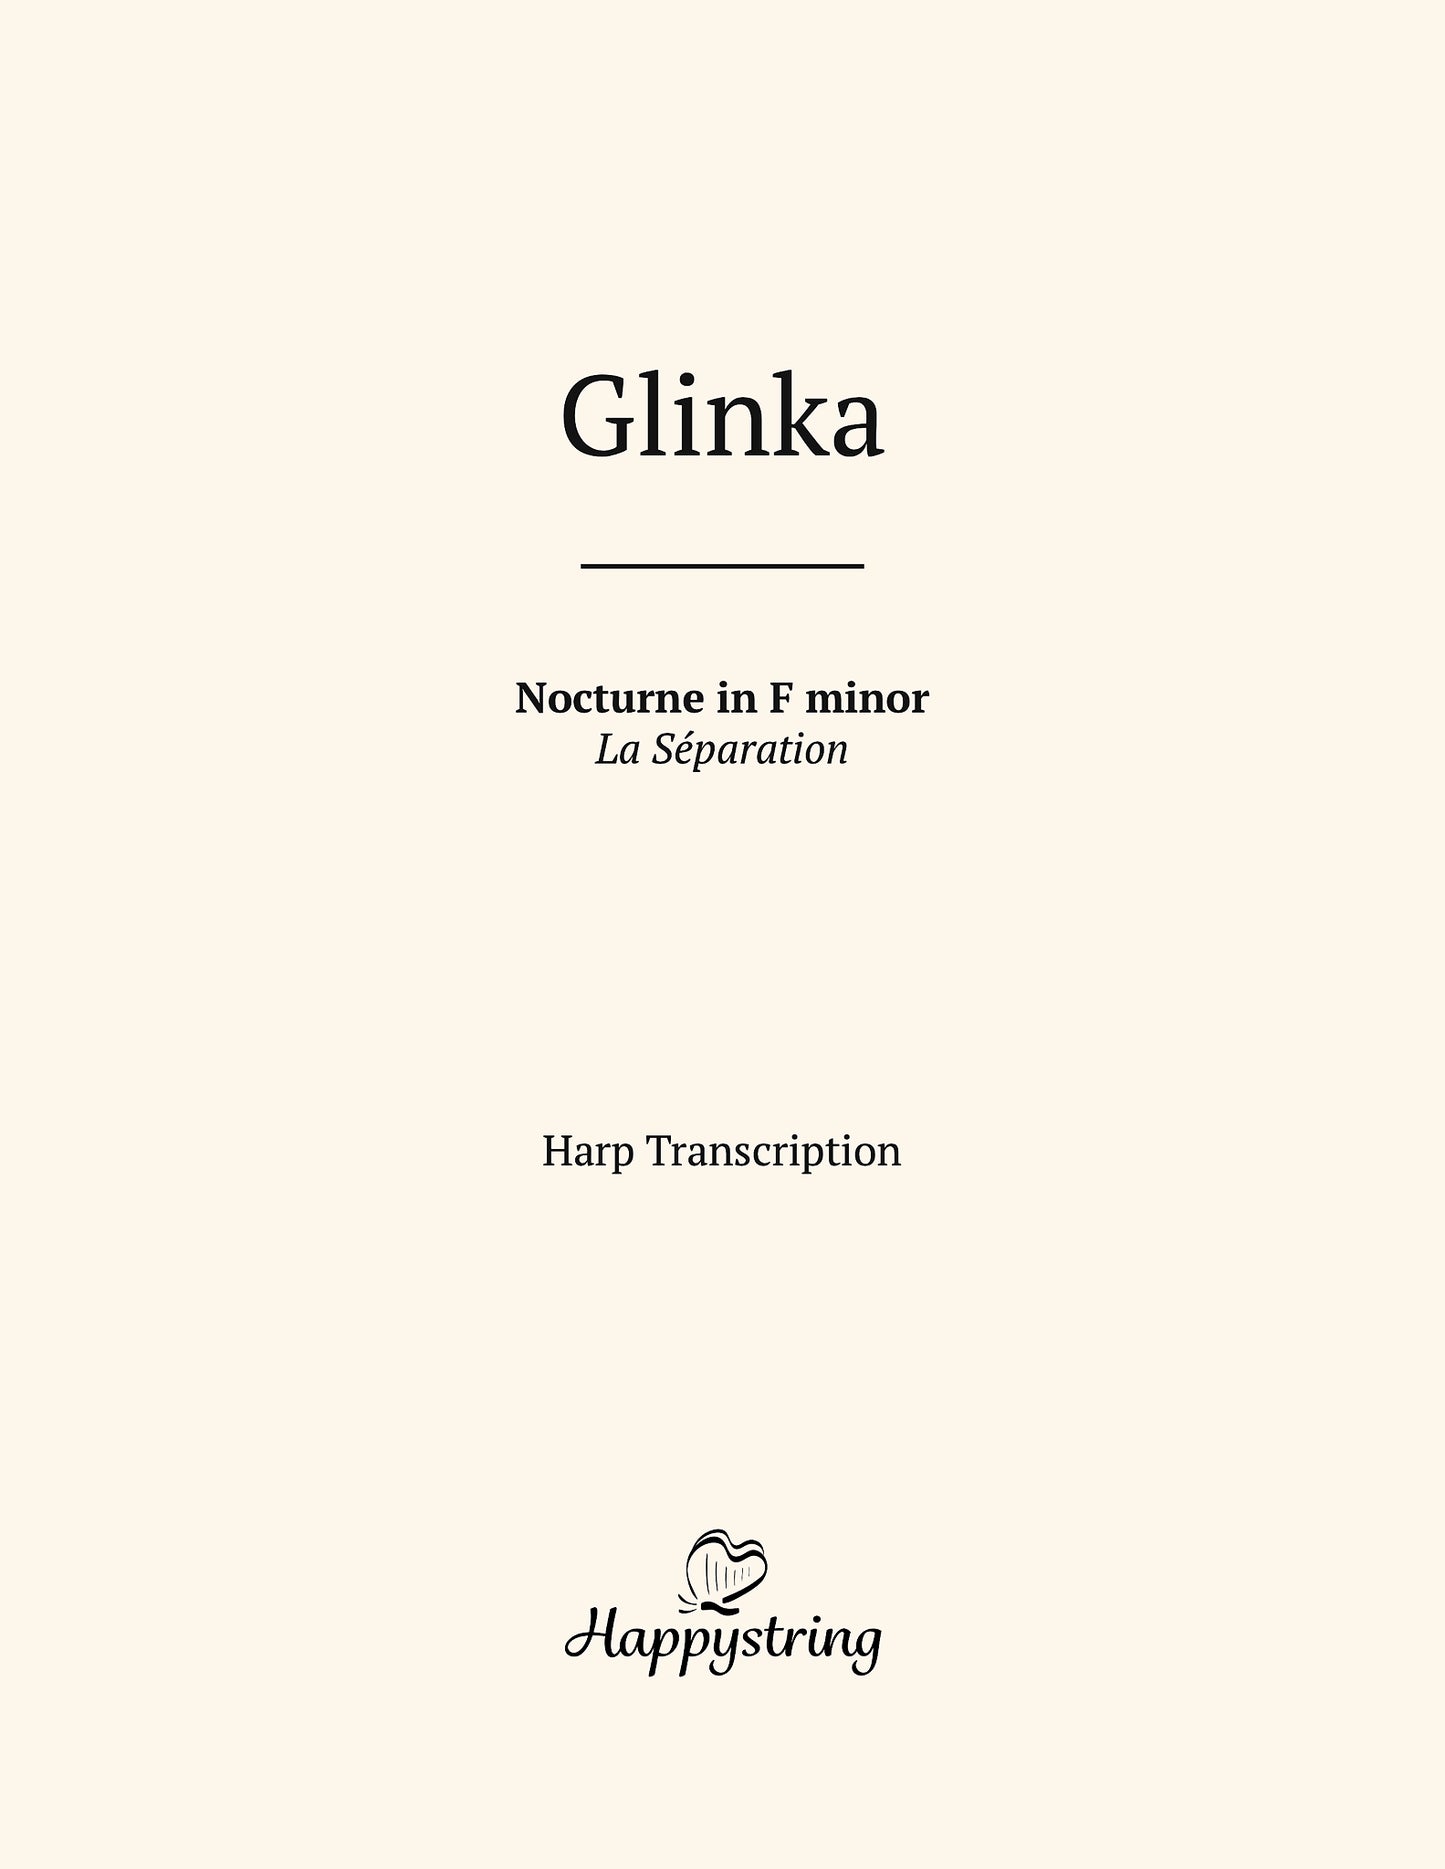 Nocturne in F Minor by Glinka